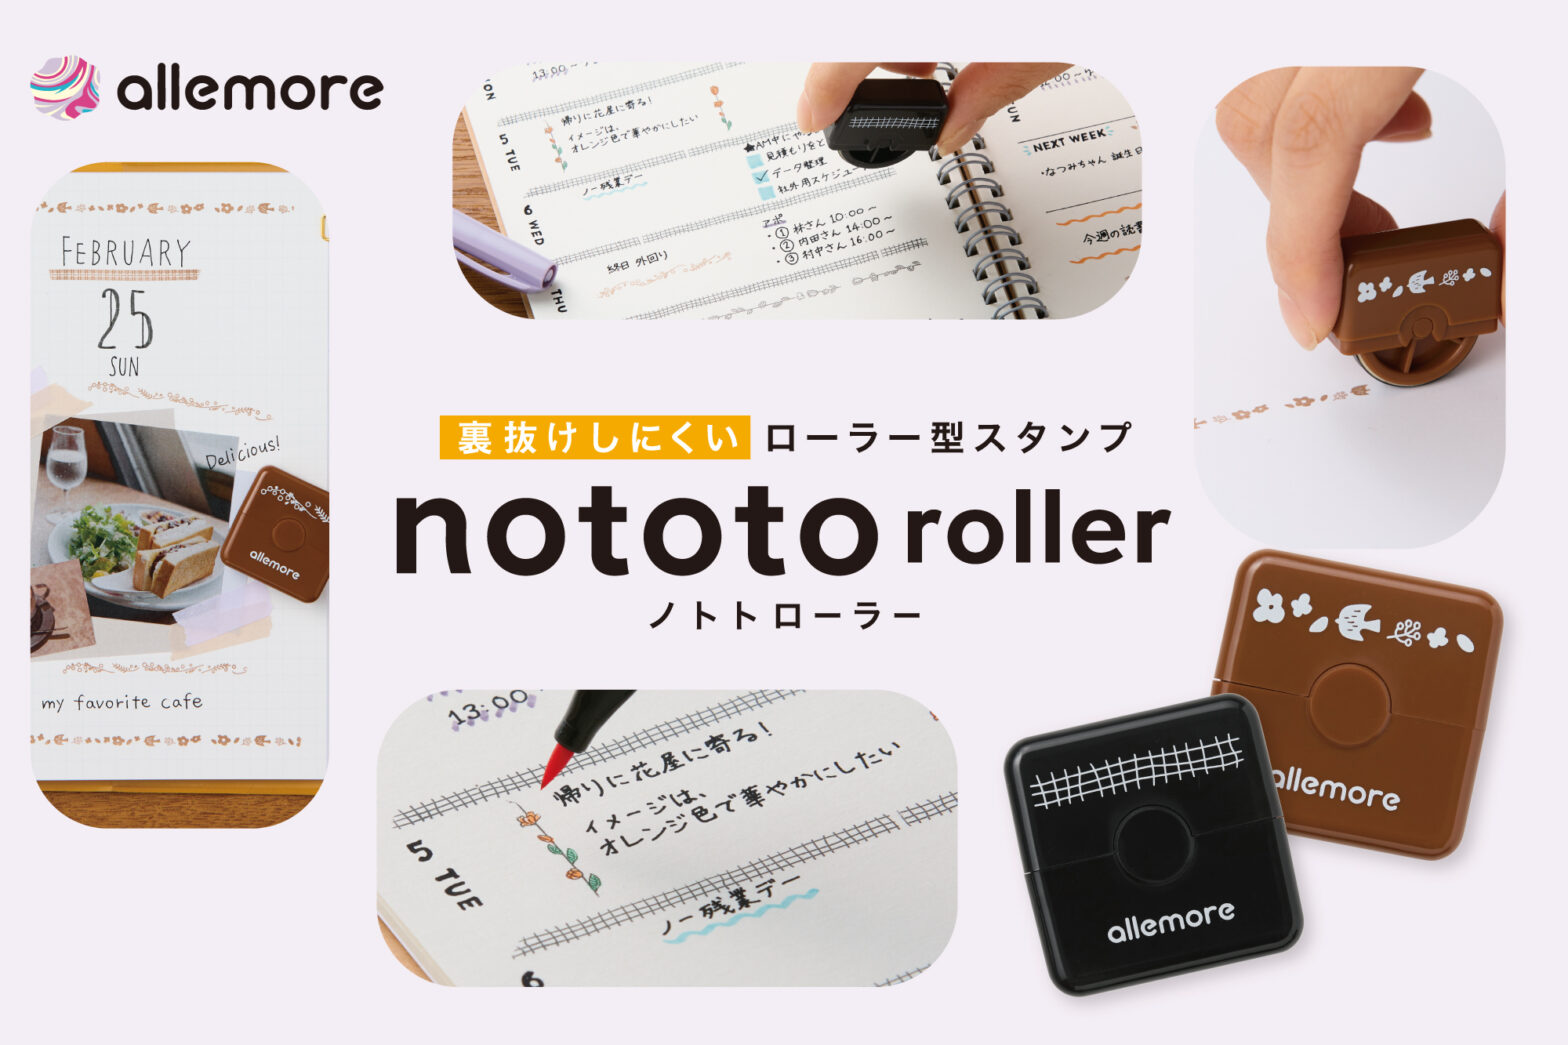 大人キュートなローラー型スタンプ「nototo roller：ノトトローラー」